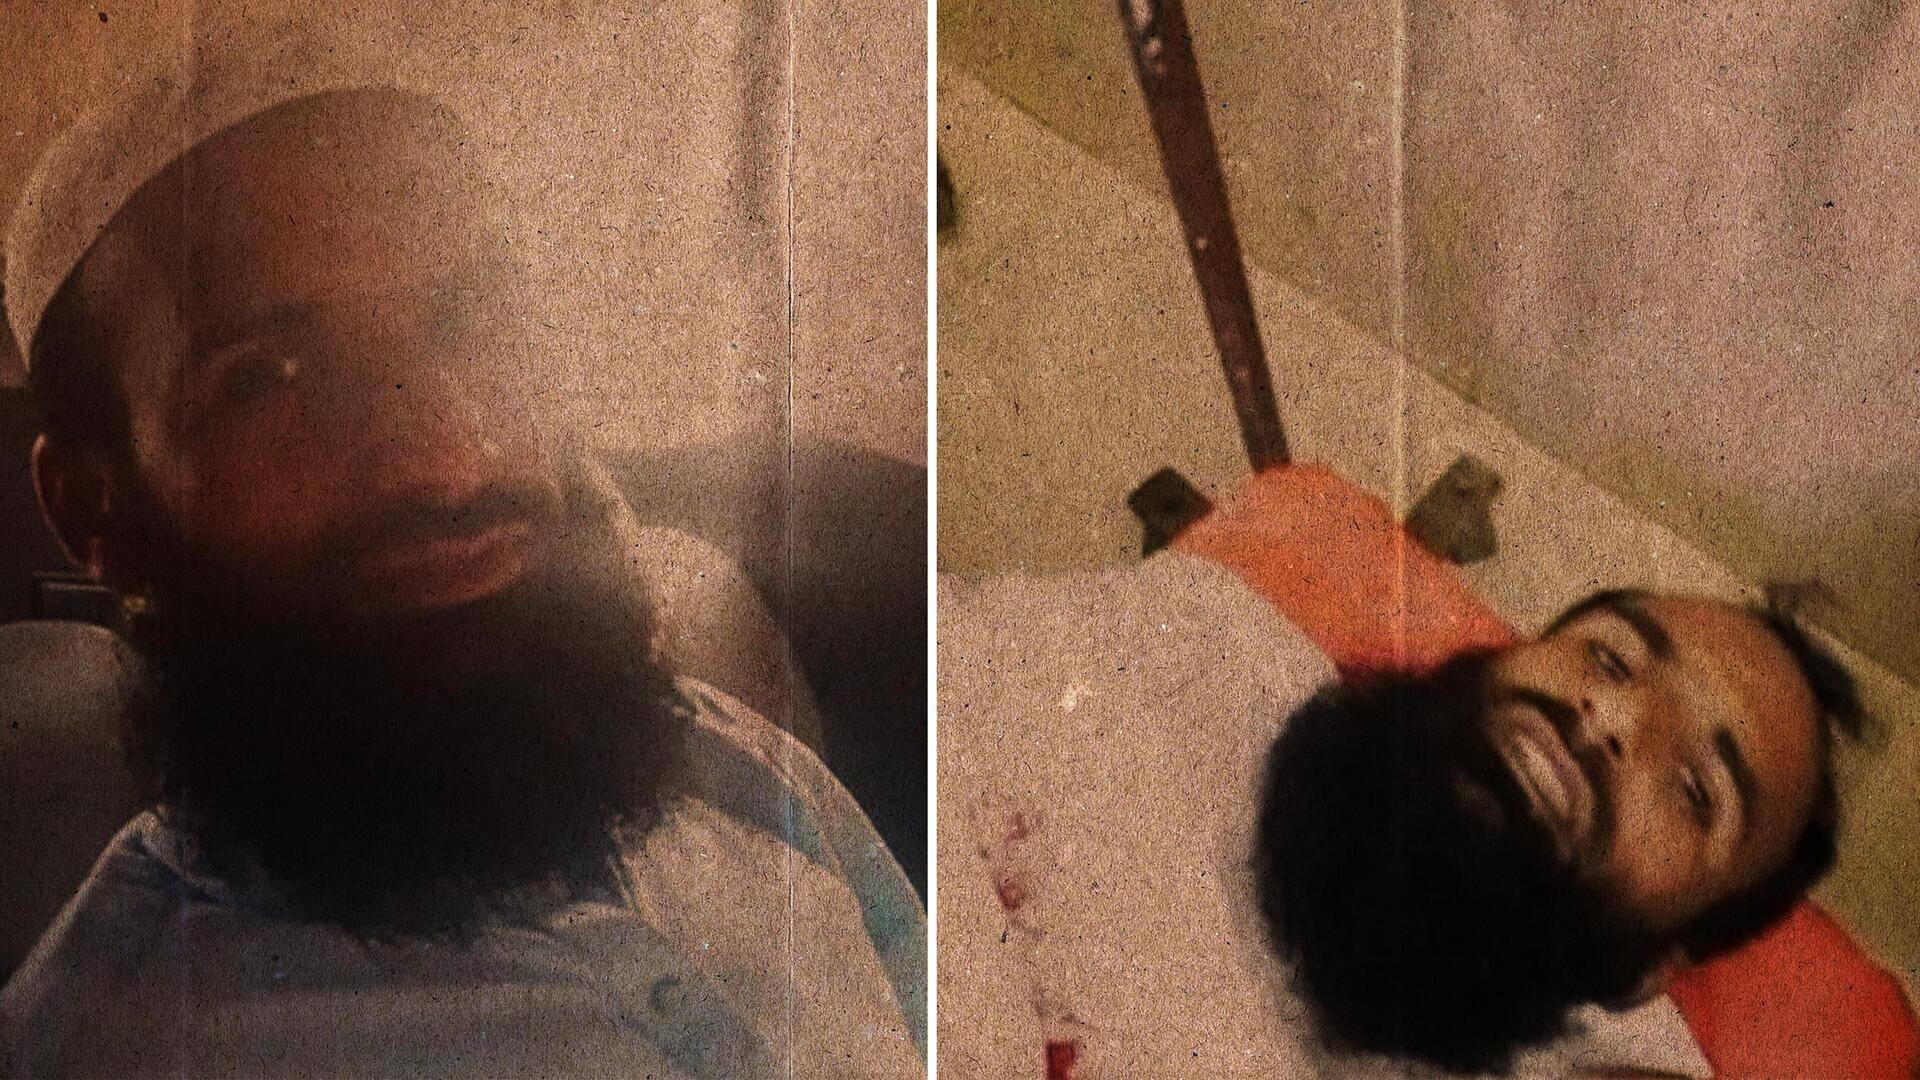 हाफिज सईद के करीबी कैसर फारूख की कराची में गोली मारकर हत्या- रिपोर्ट